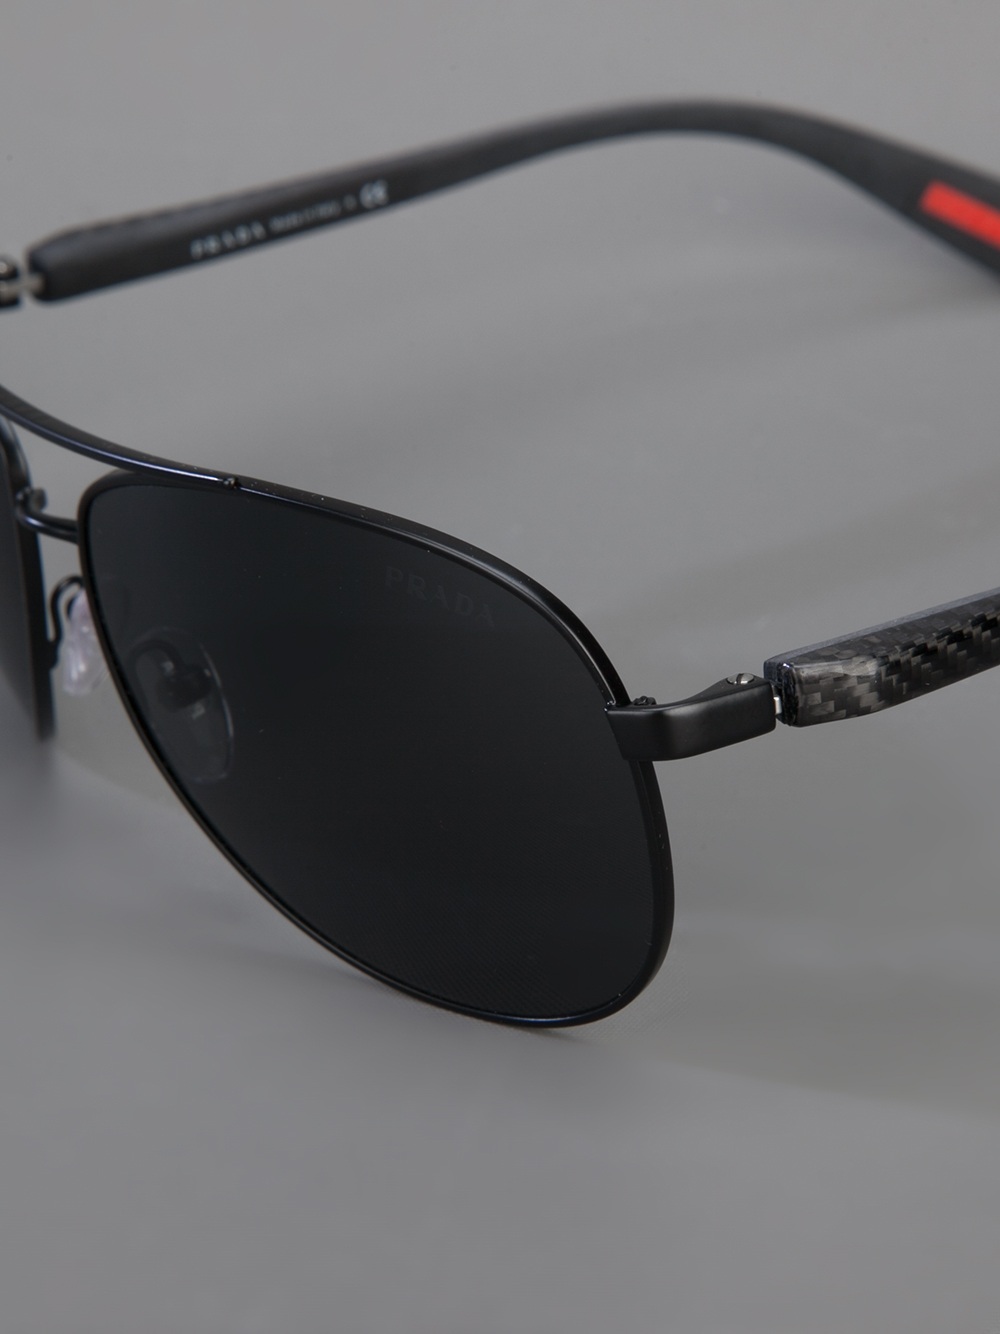 Actualizar 44+ imagen prada aviator mens sunglasses - Abzlocal.mx